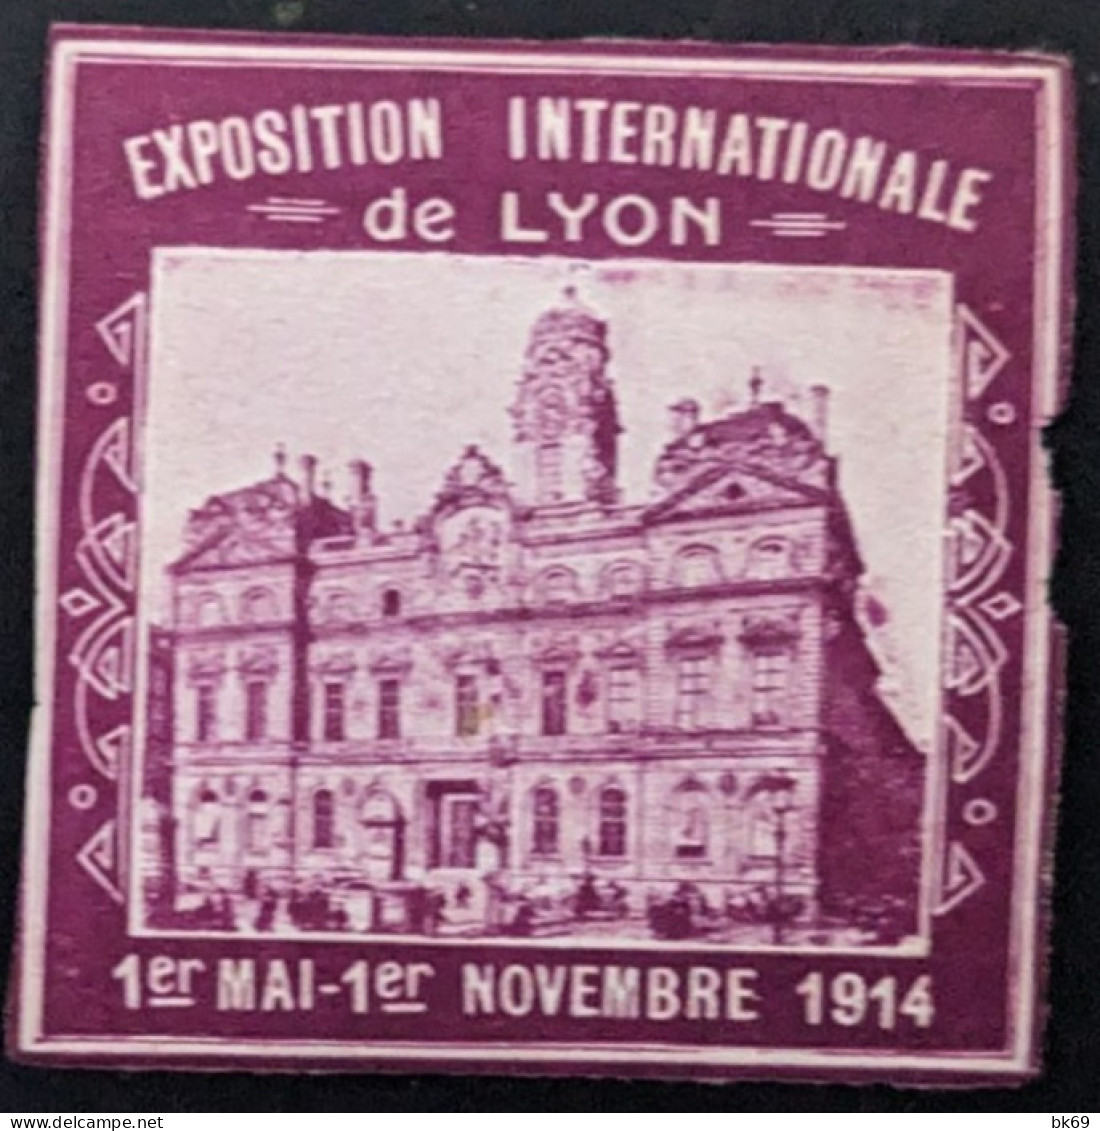 Lyon Exposition Internationale de 1914 , 5 vignettes